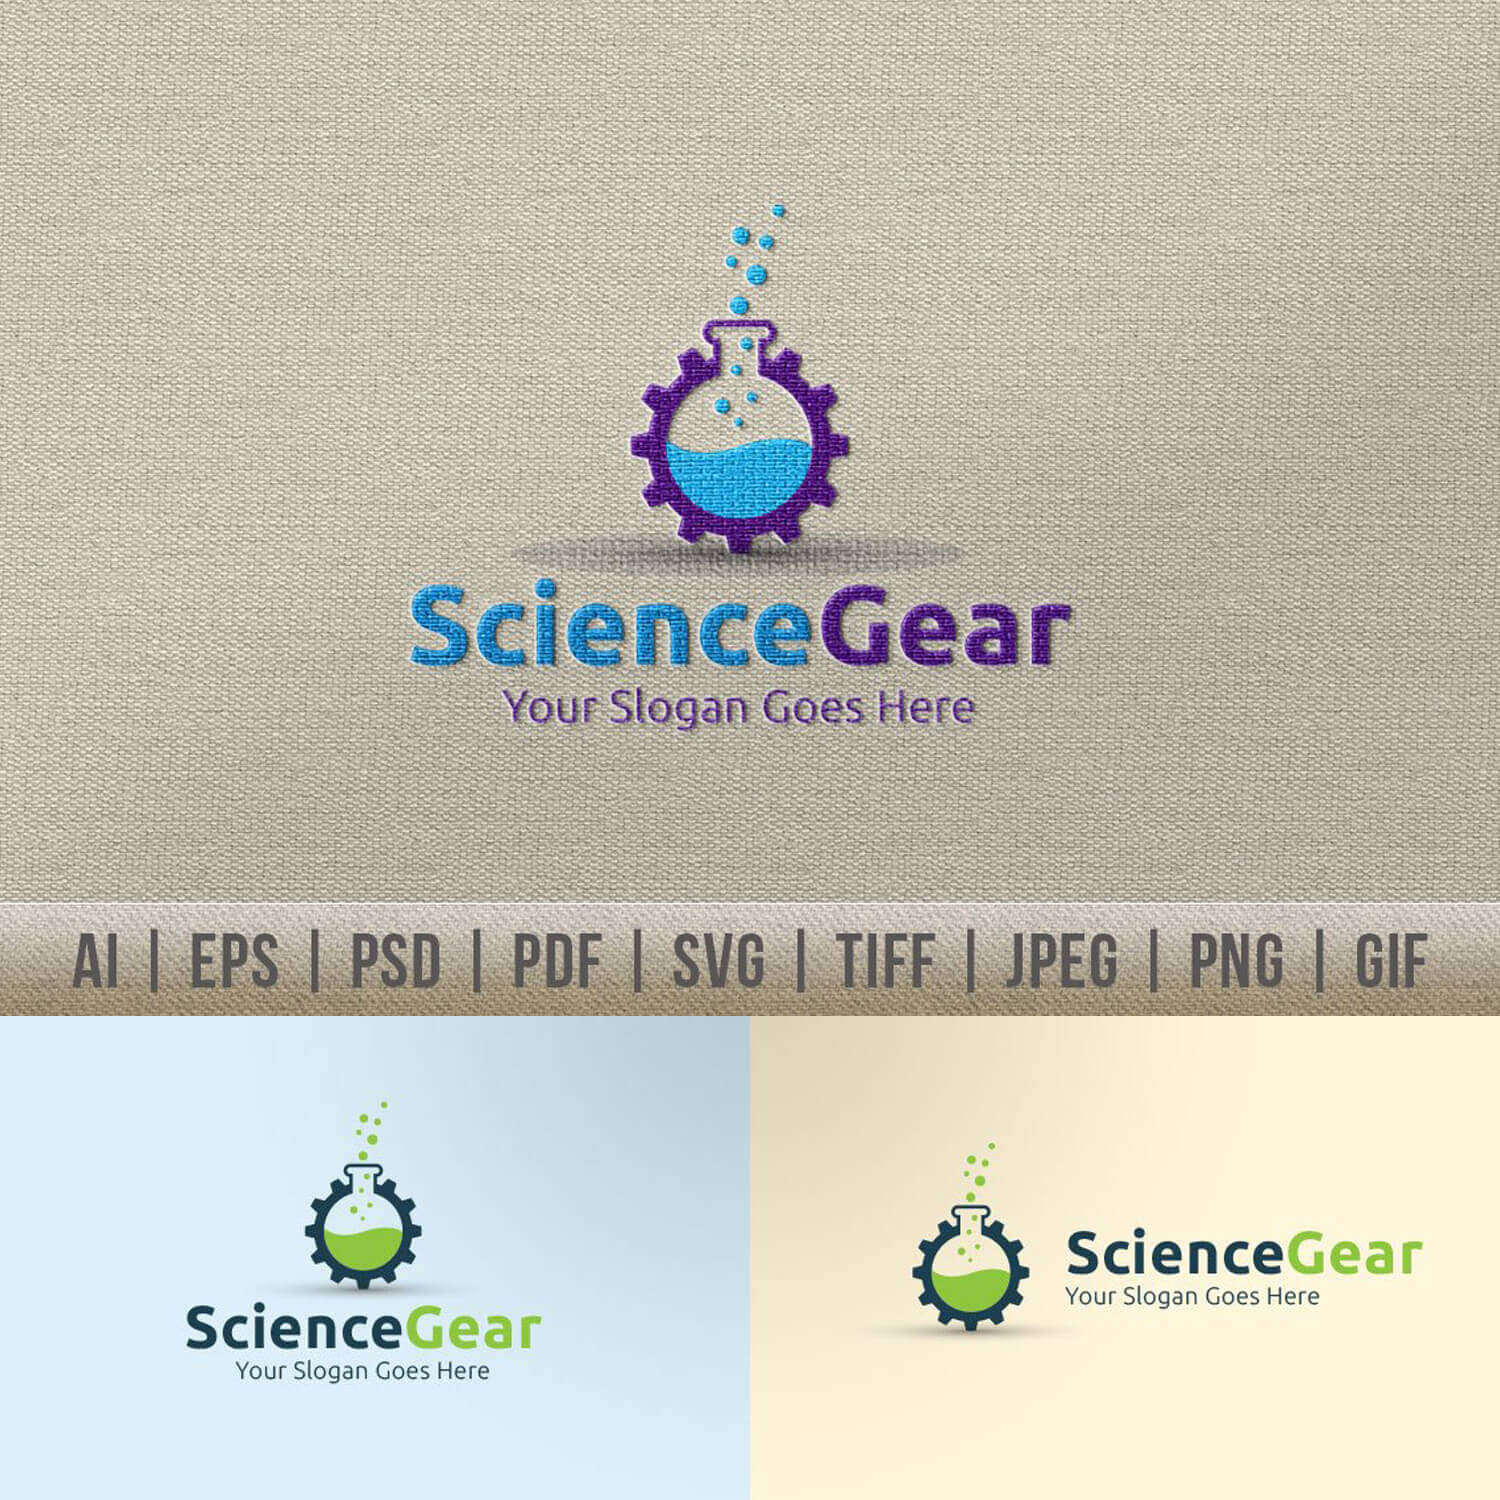 Science gear logo.